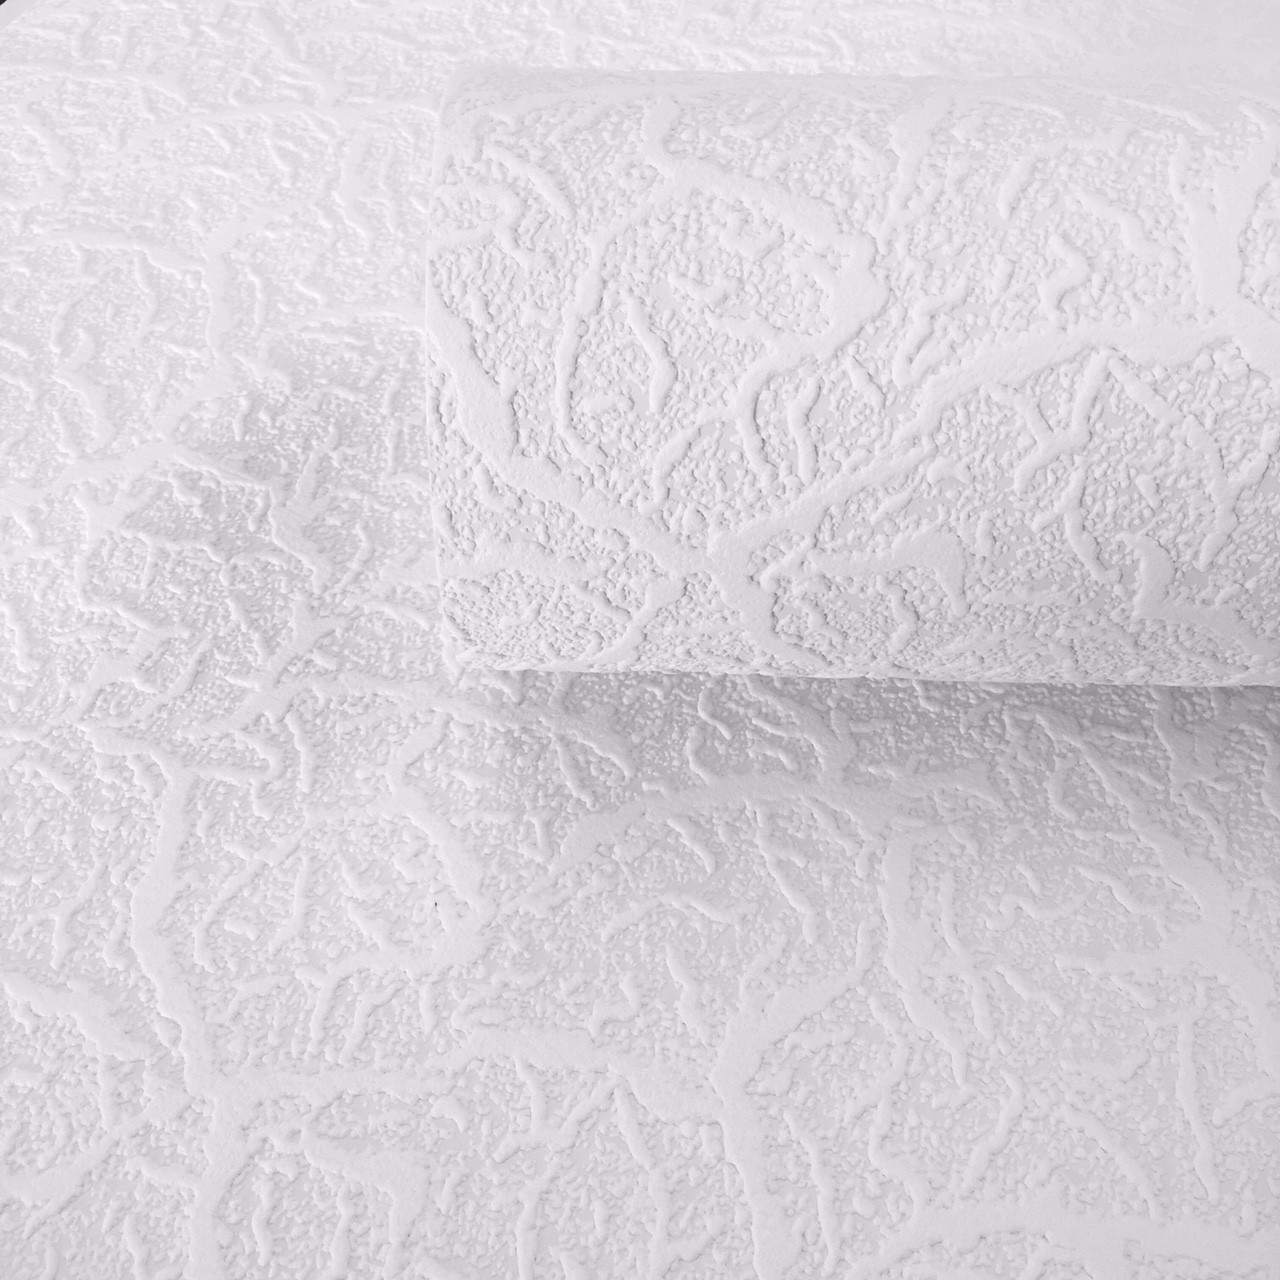 吹きビニール壁紙,白い,壁紙,天井,パターン,繊維